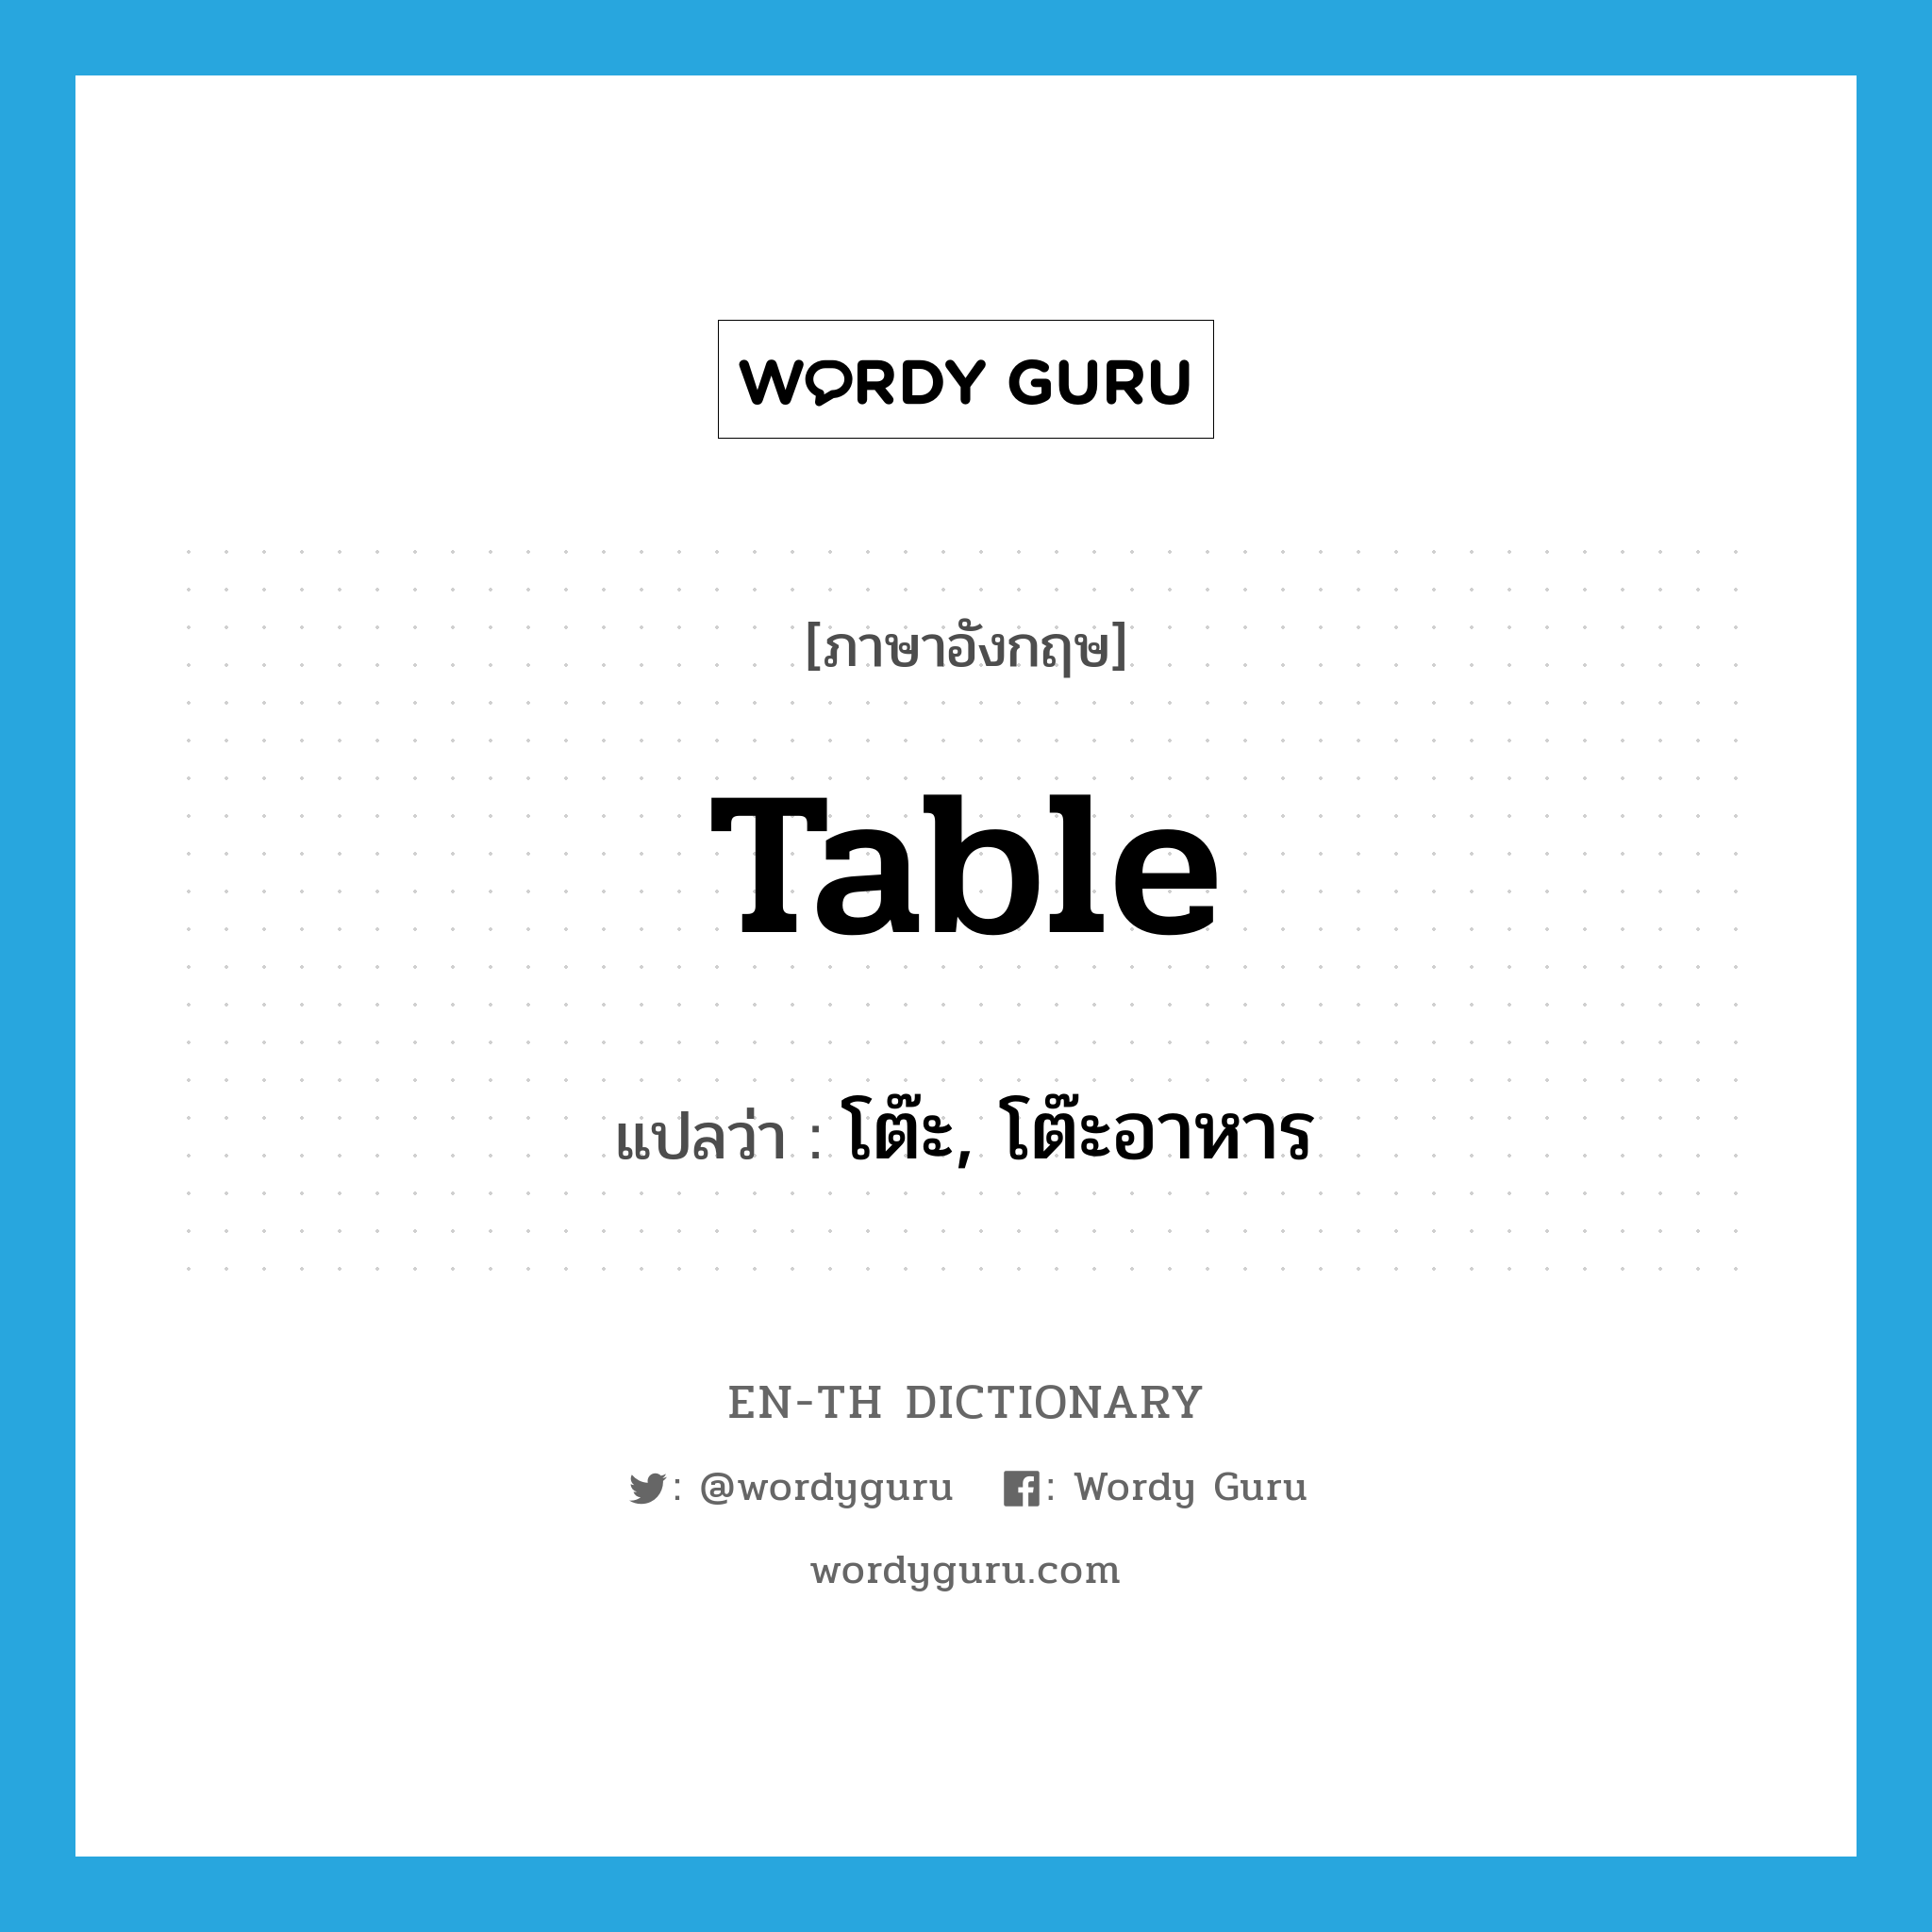 โต๊ะ, โต๊ะอาหาร ภาษาอังกฤษ?, คำศัพท์ภาษาอังกฤษ โต๊ะ, โต๊ะอาหาร แปลว่า table ประเภท N หมวด N